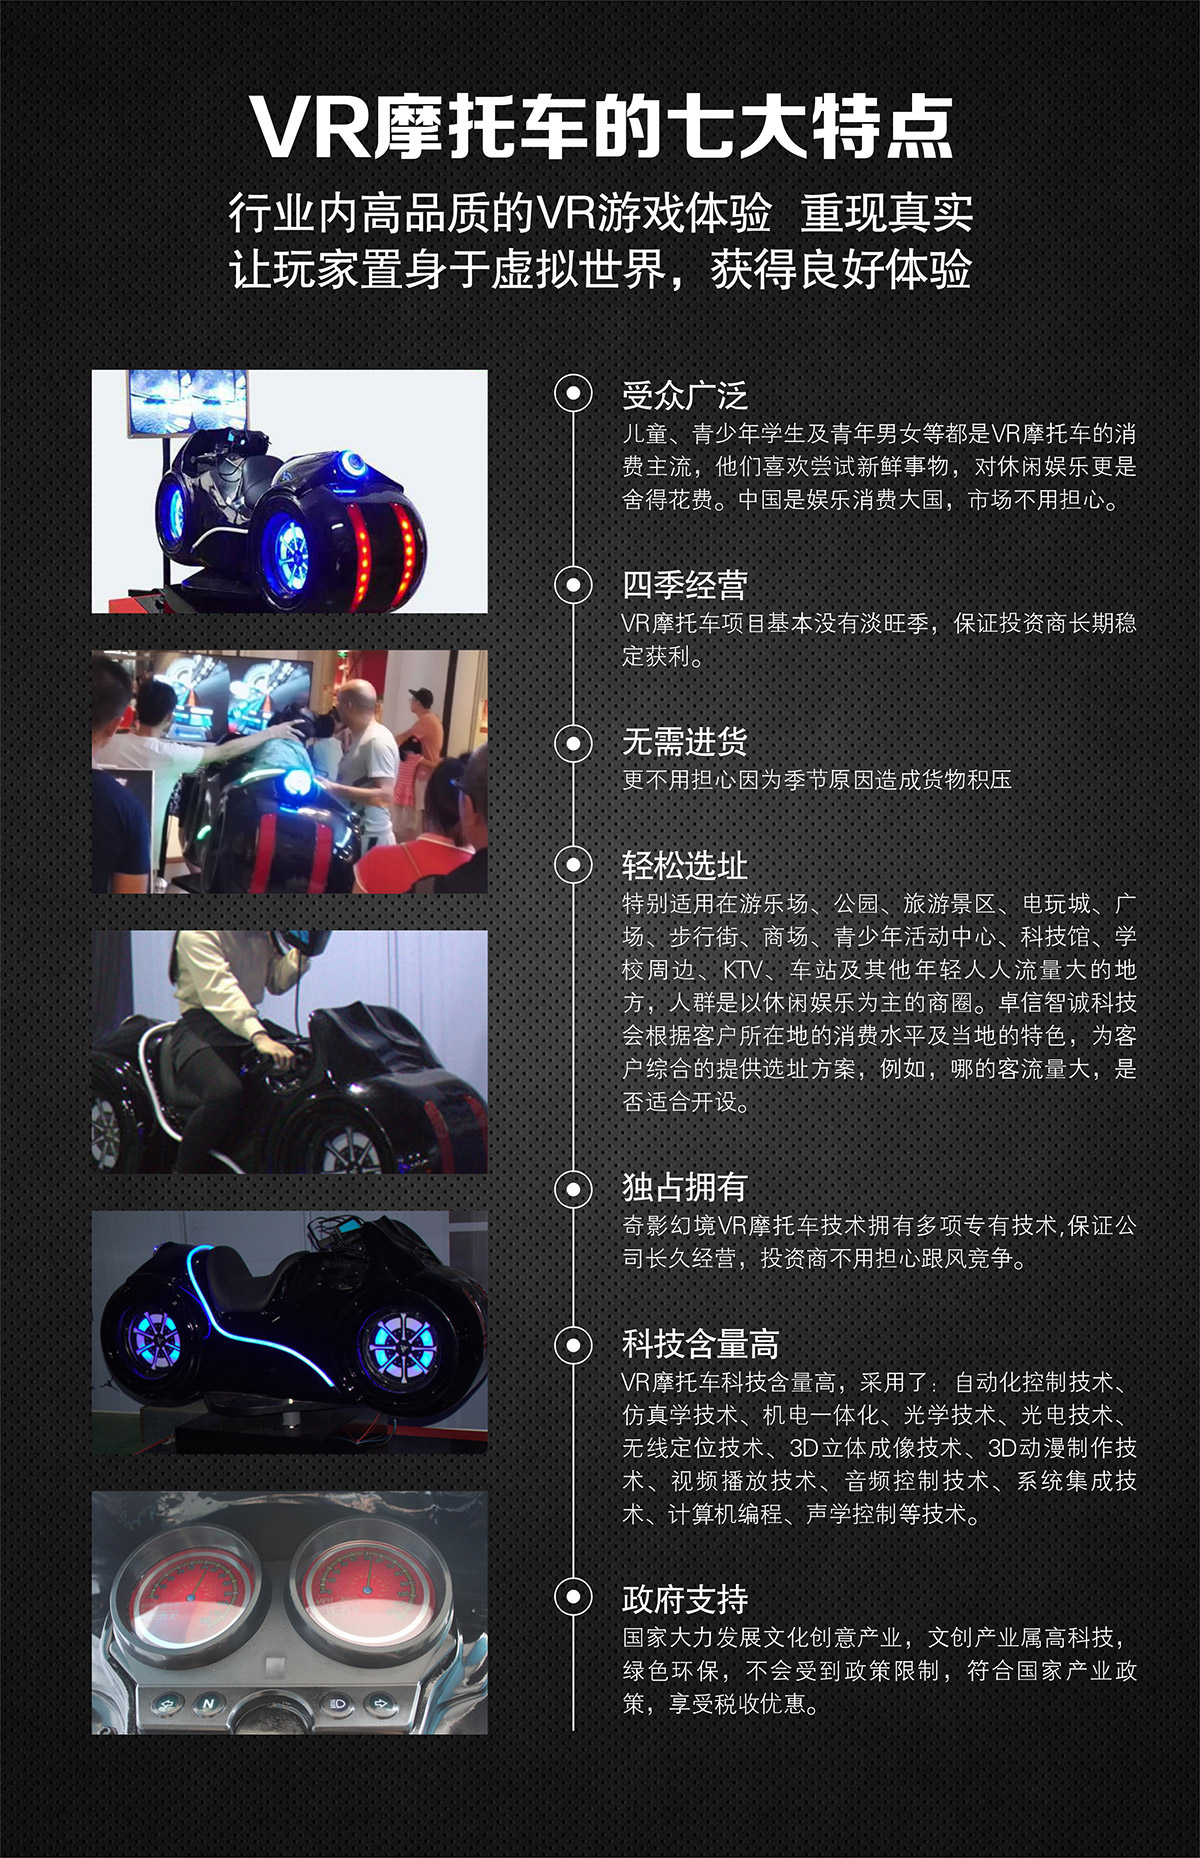 互动电影VR摩托车特点高品质游戏体验.jpg